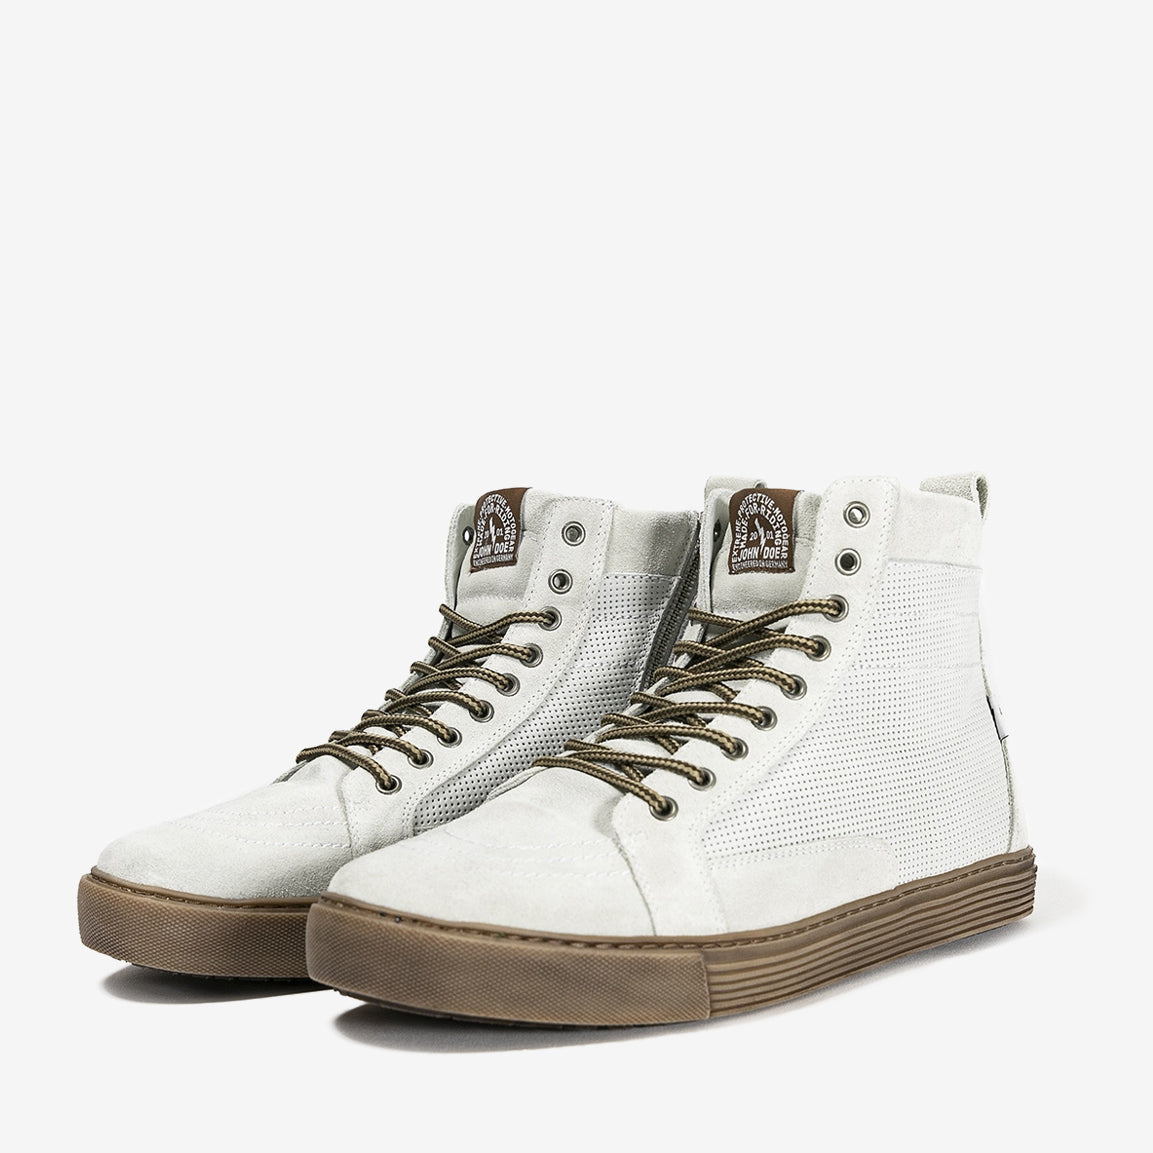 John Doe Neo Motorrad Sneaker-Boot - white/brown